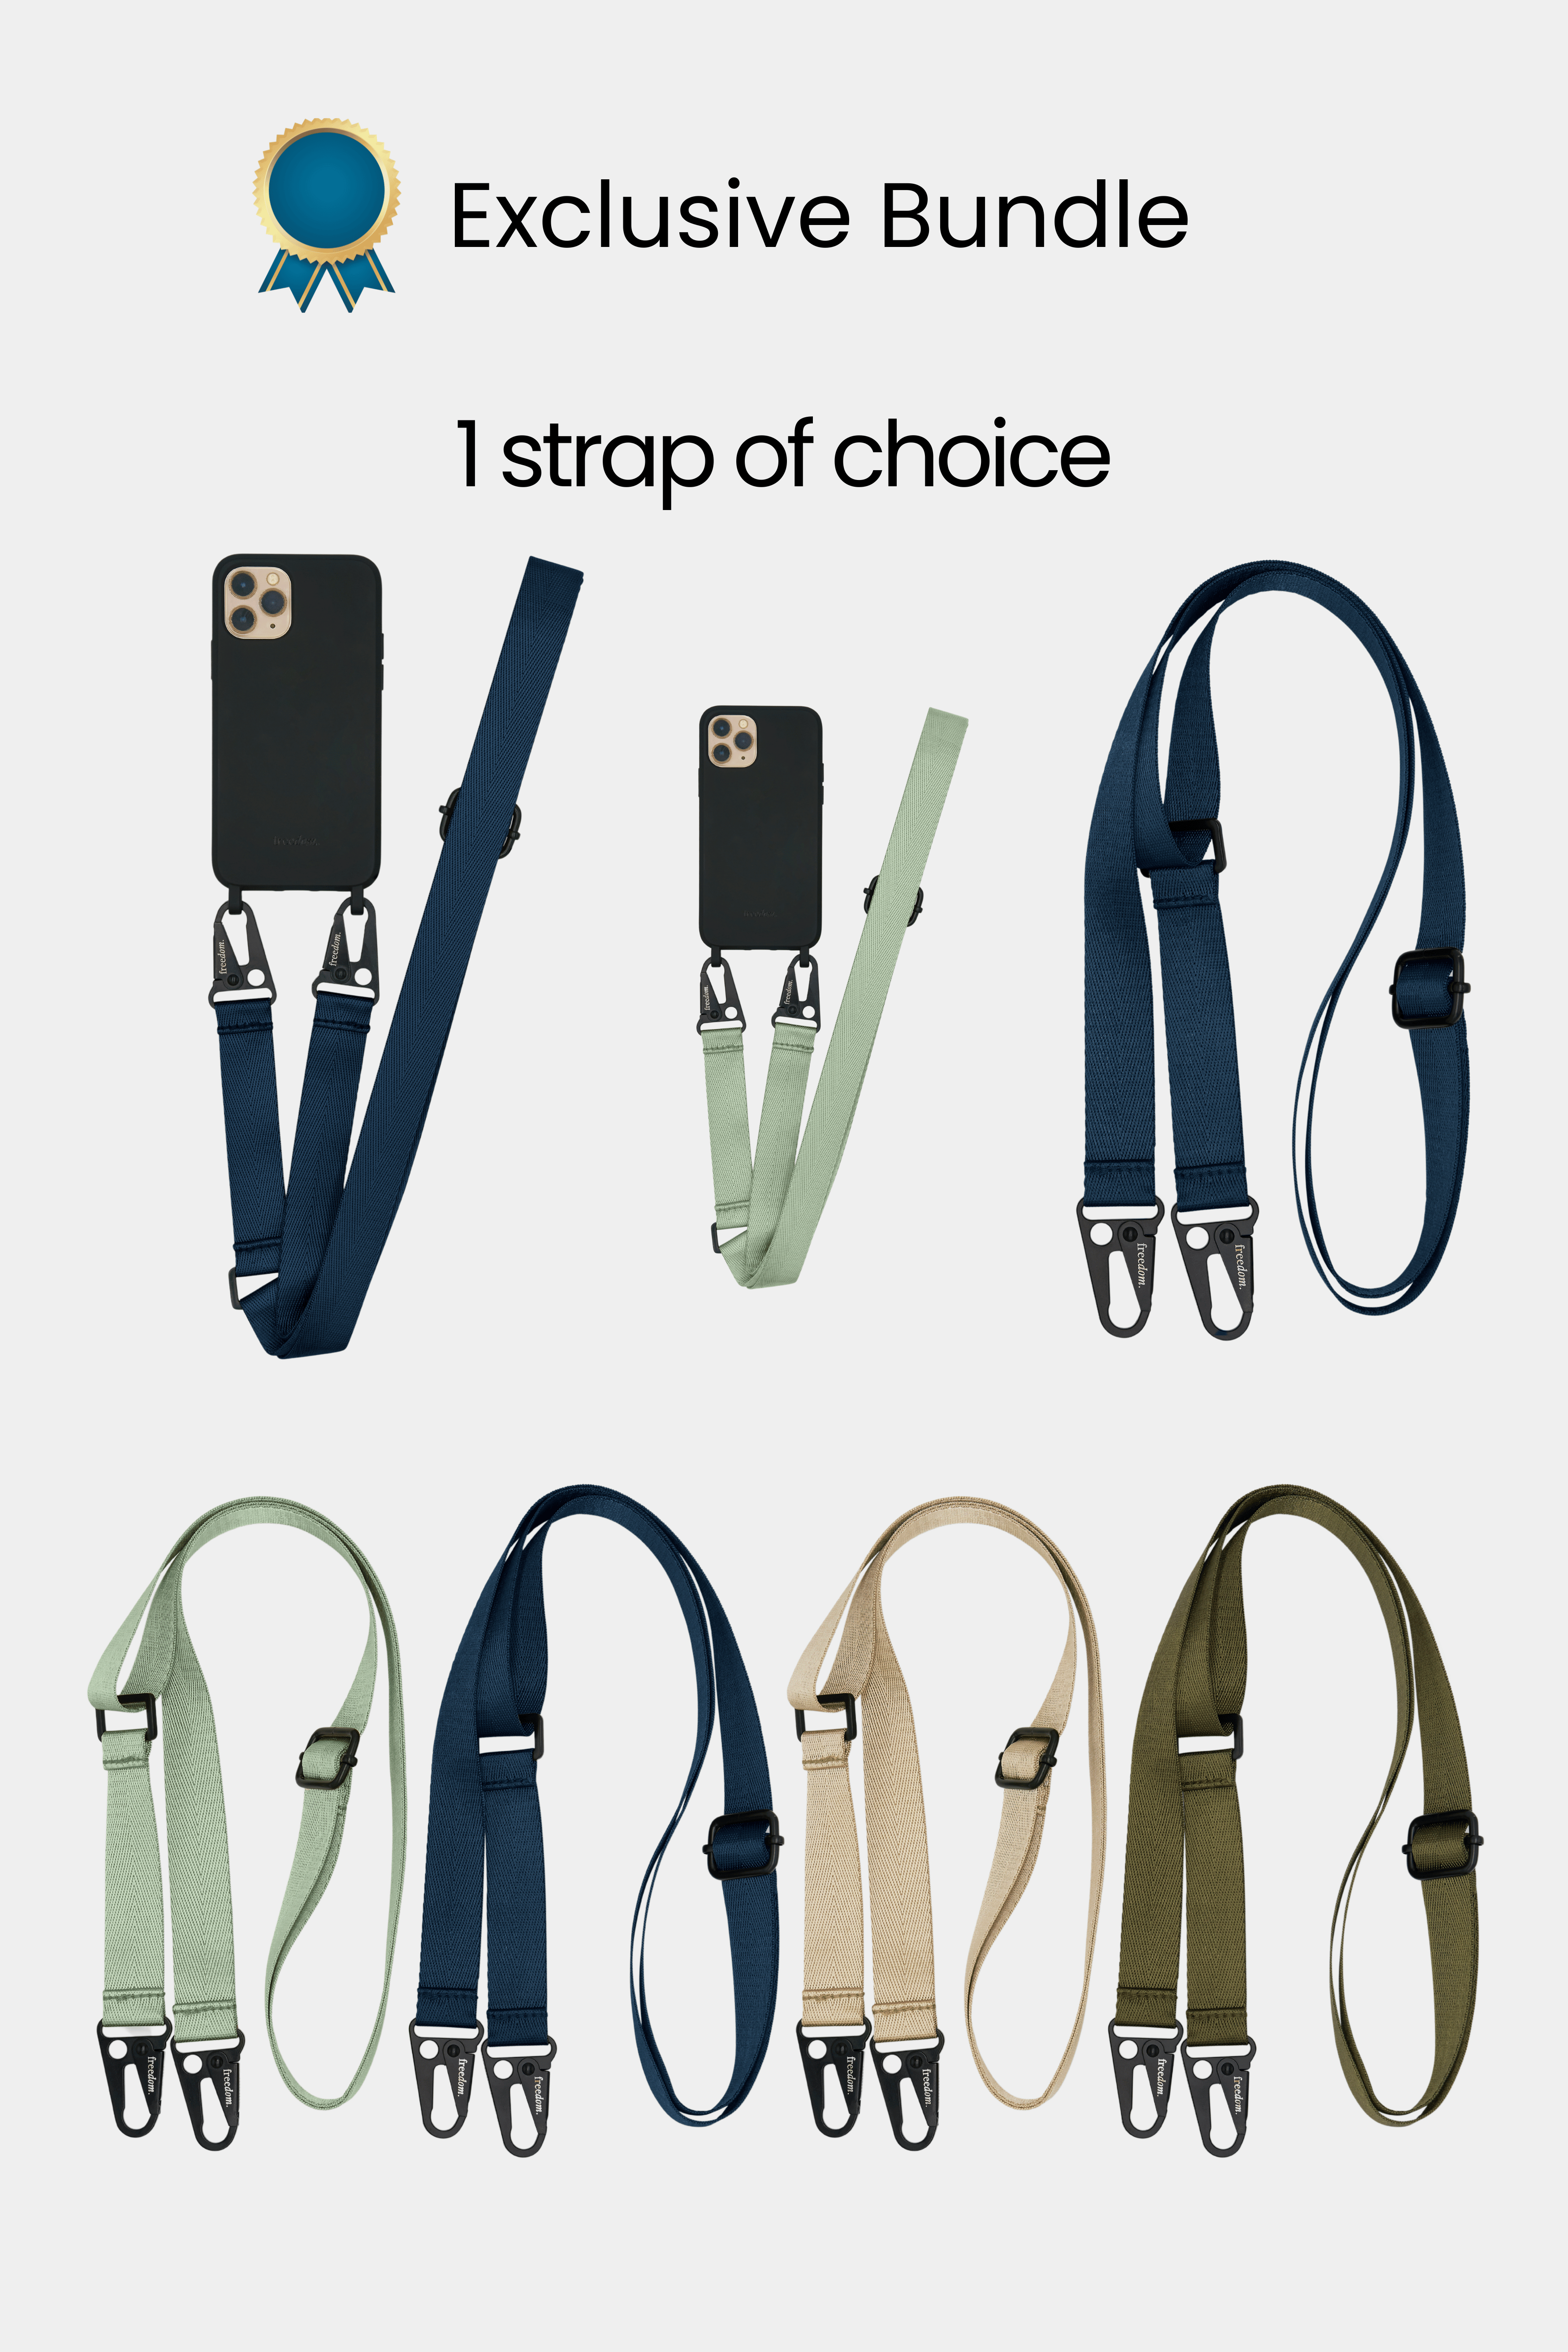 Exclusive Bundle - 2 chains + 1 strap + 1 phone case